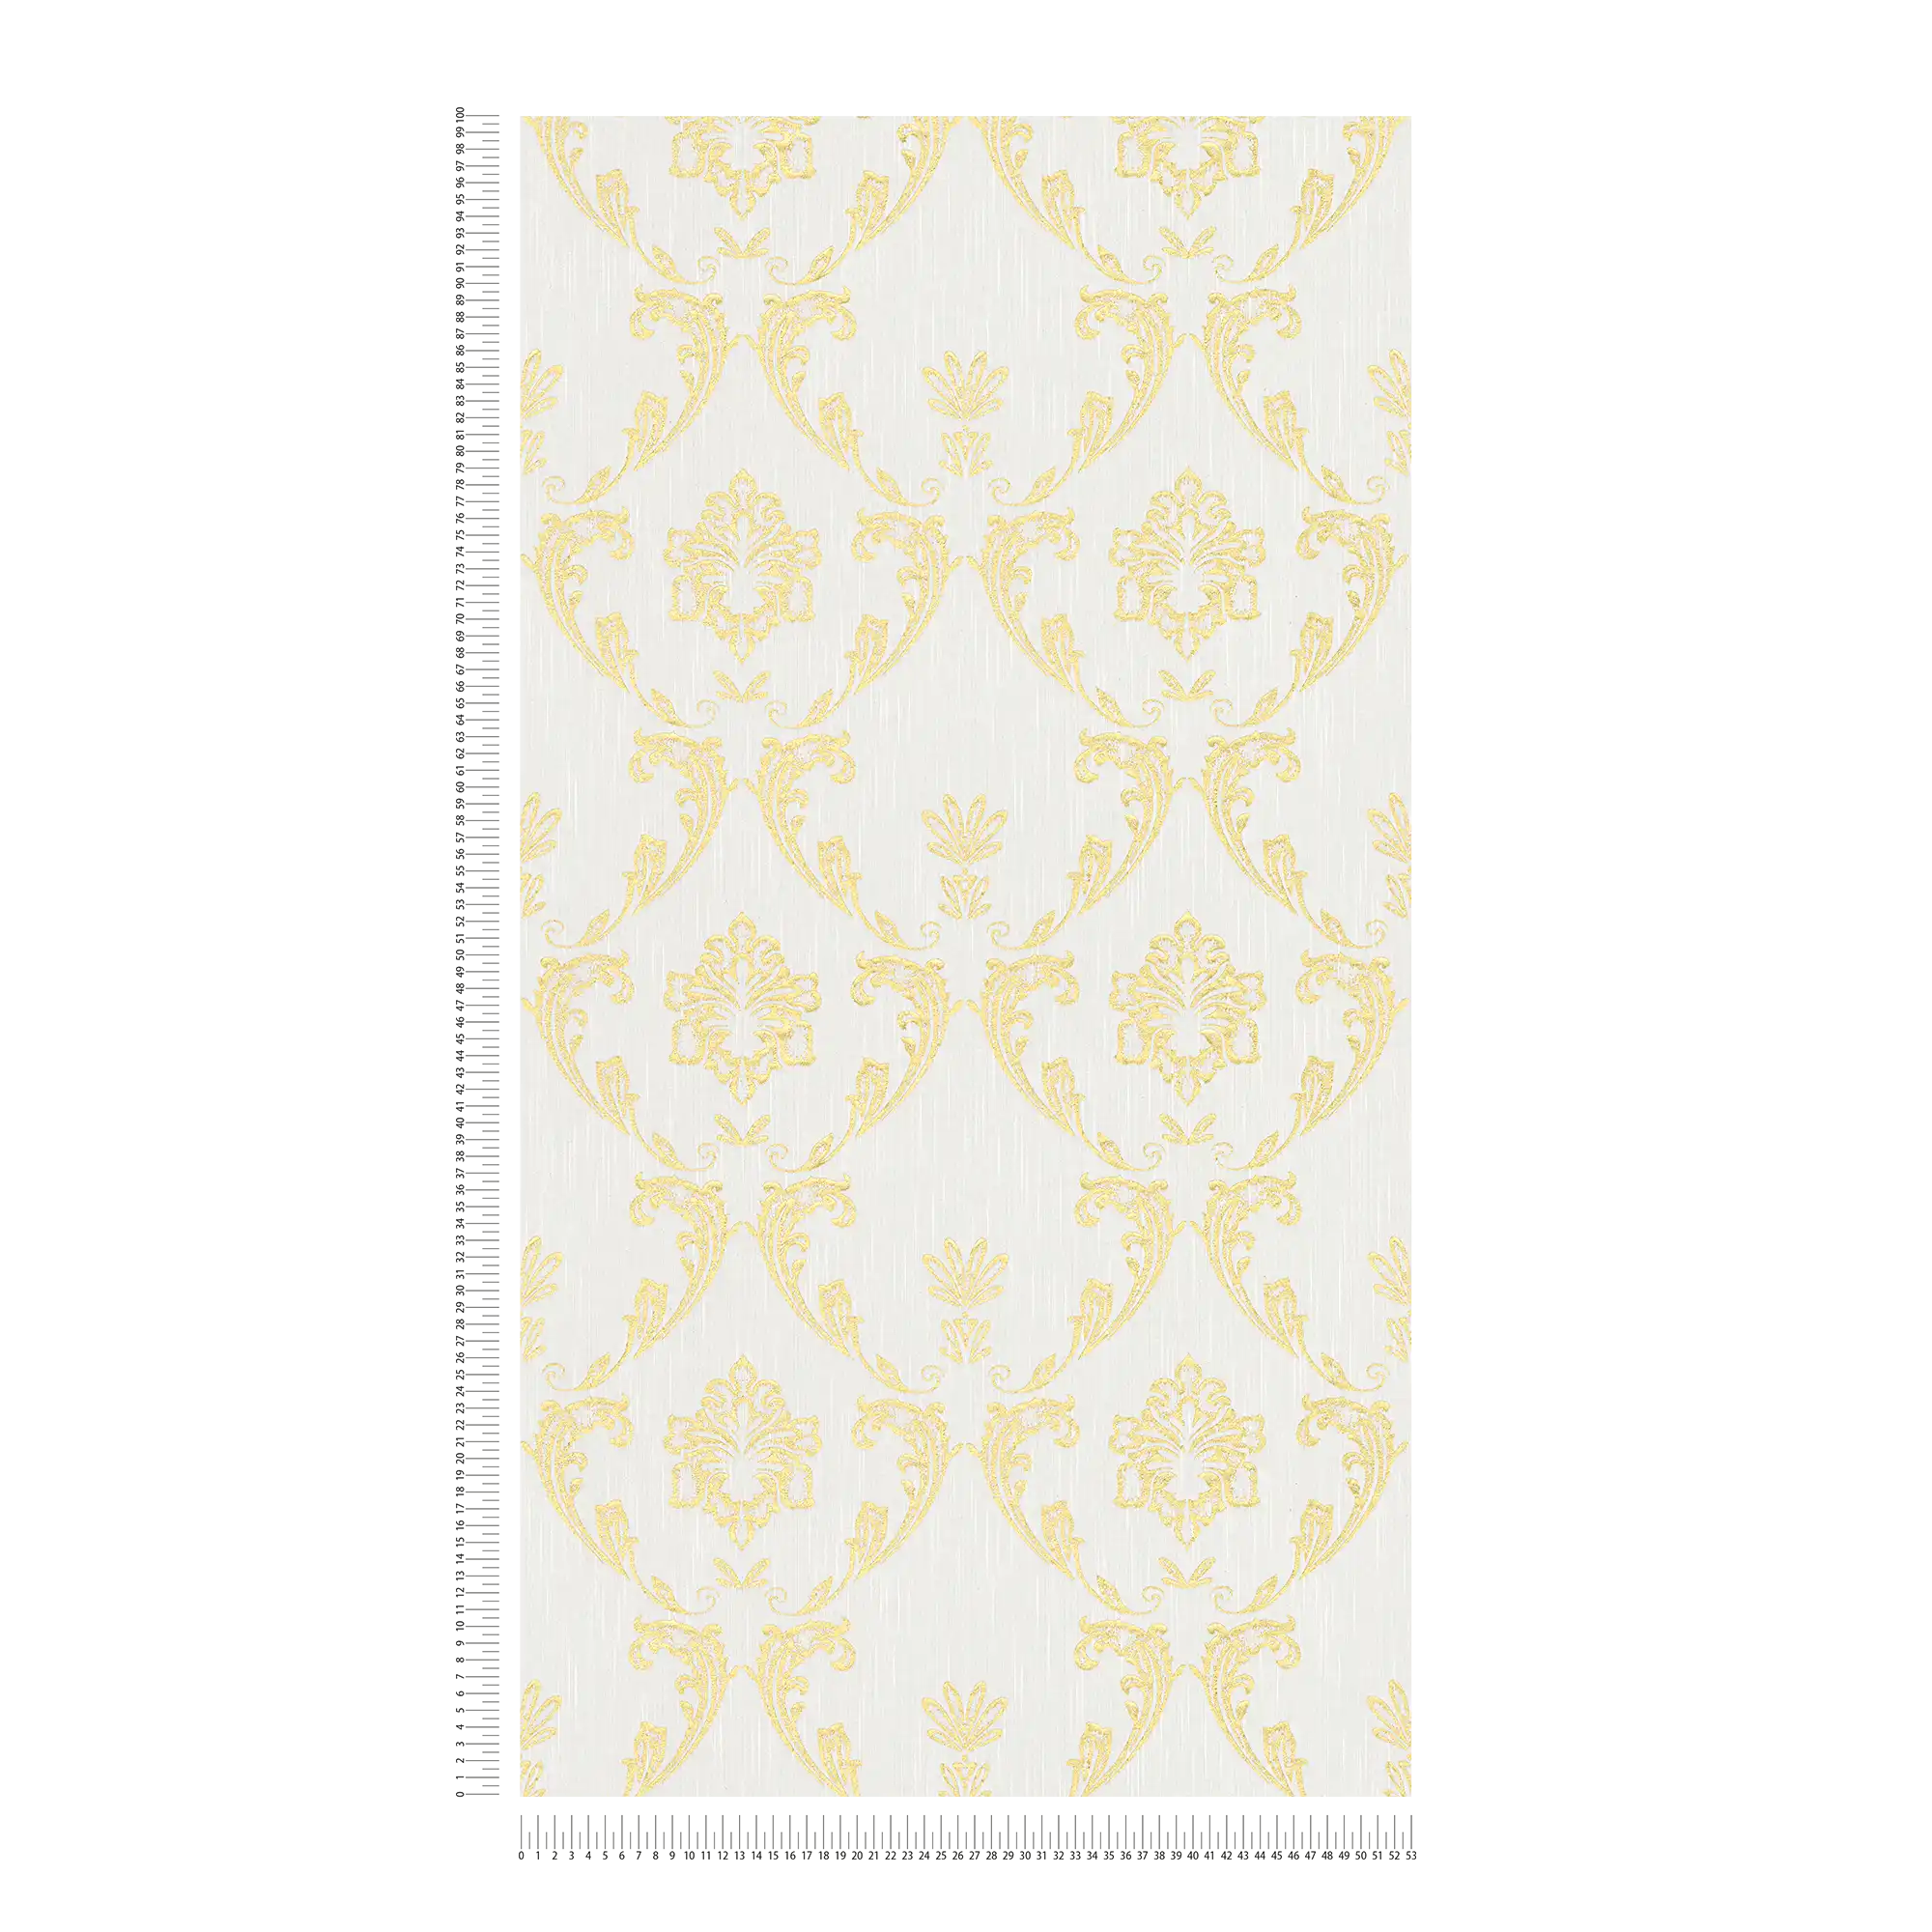             Carta da parati ornamentale con elementi floreali in oro - oro, bianco
        